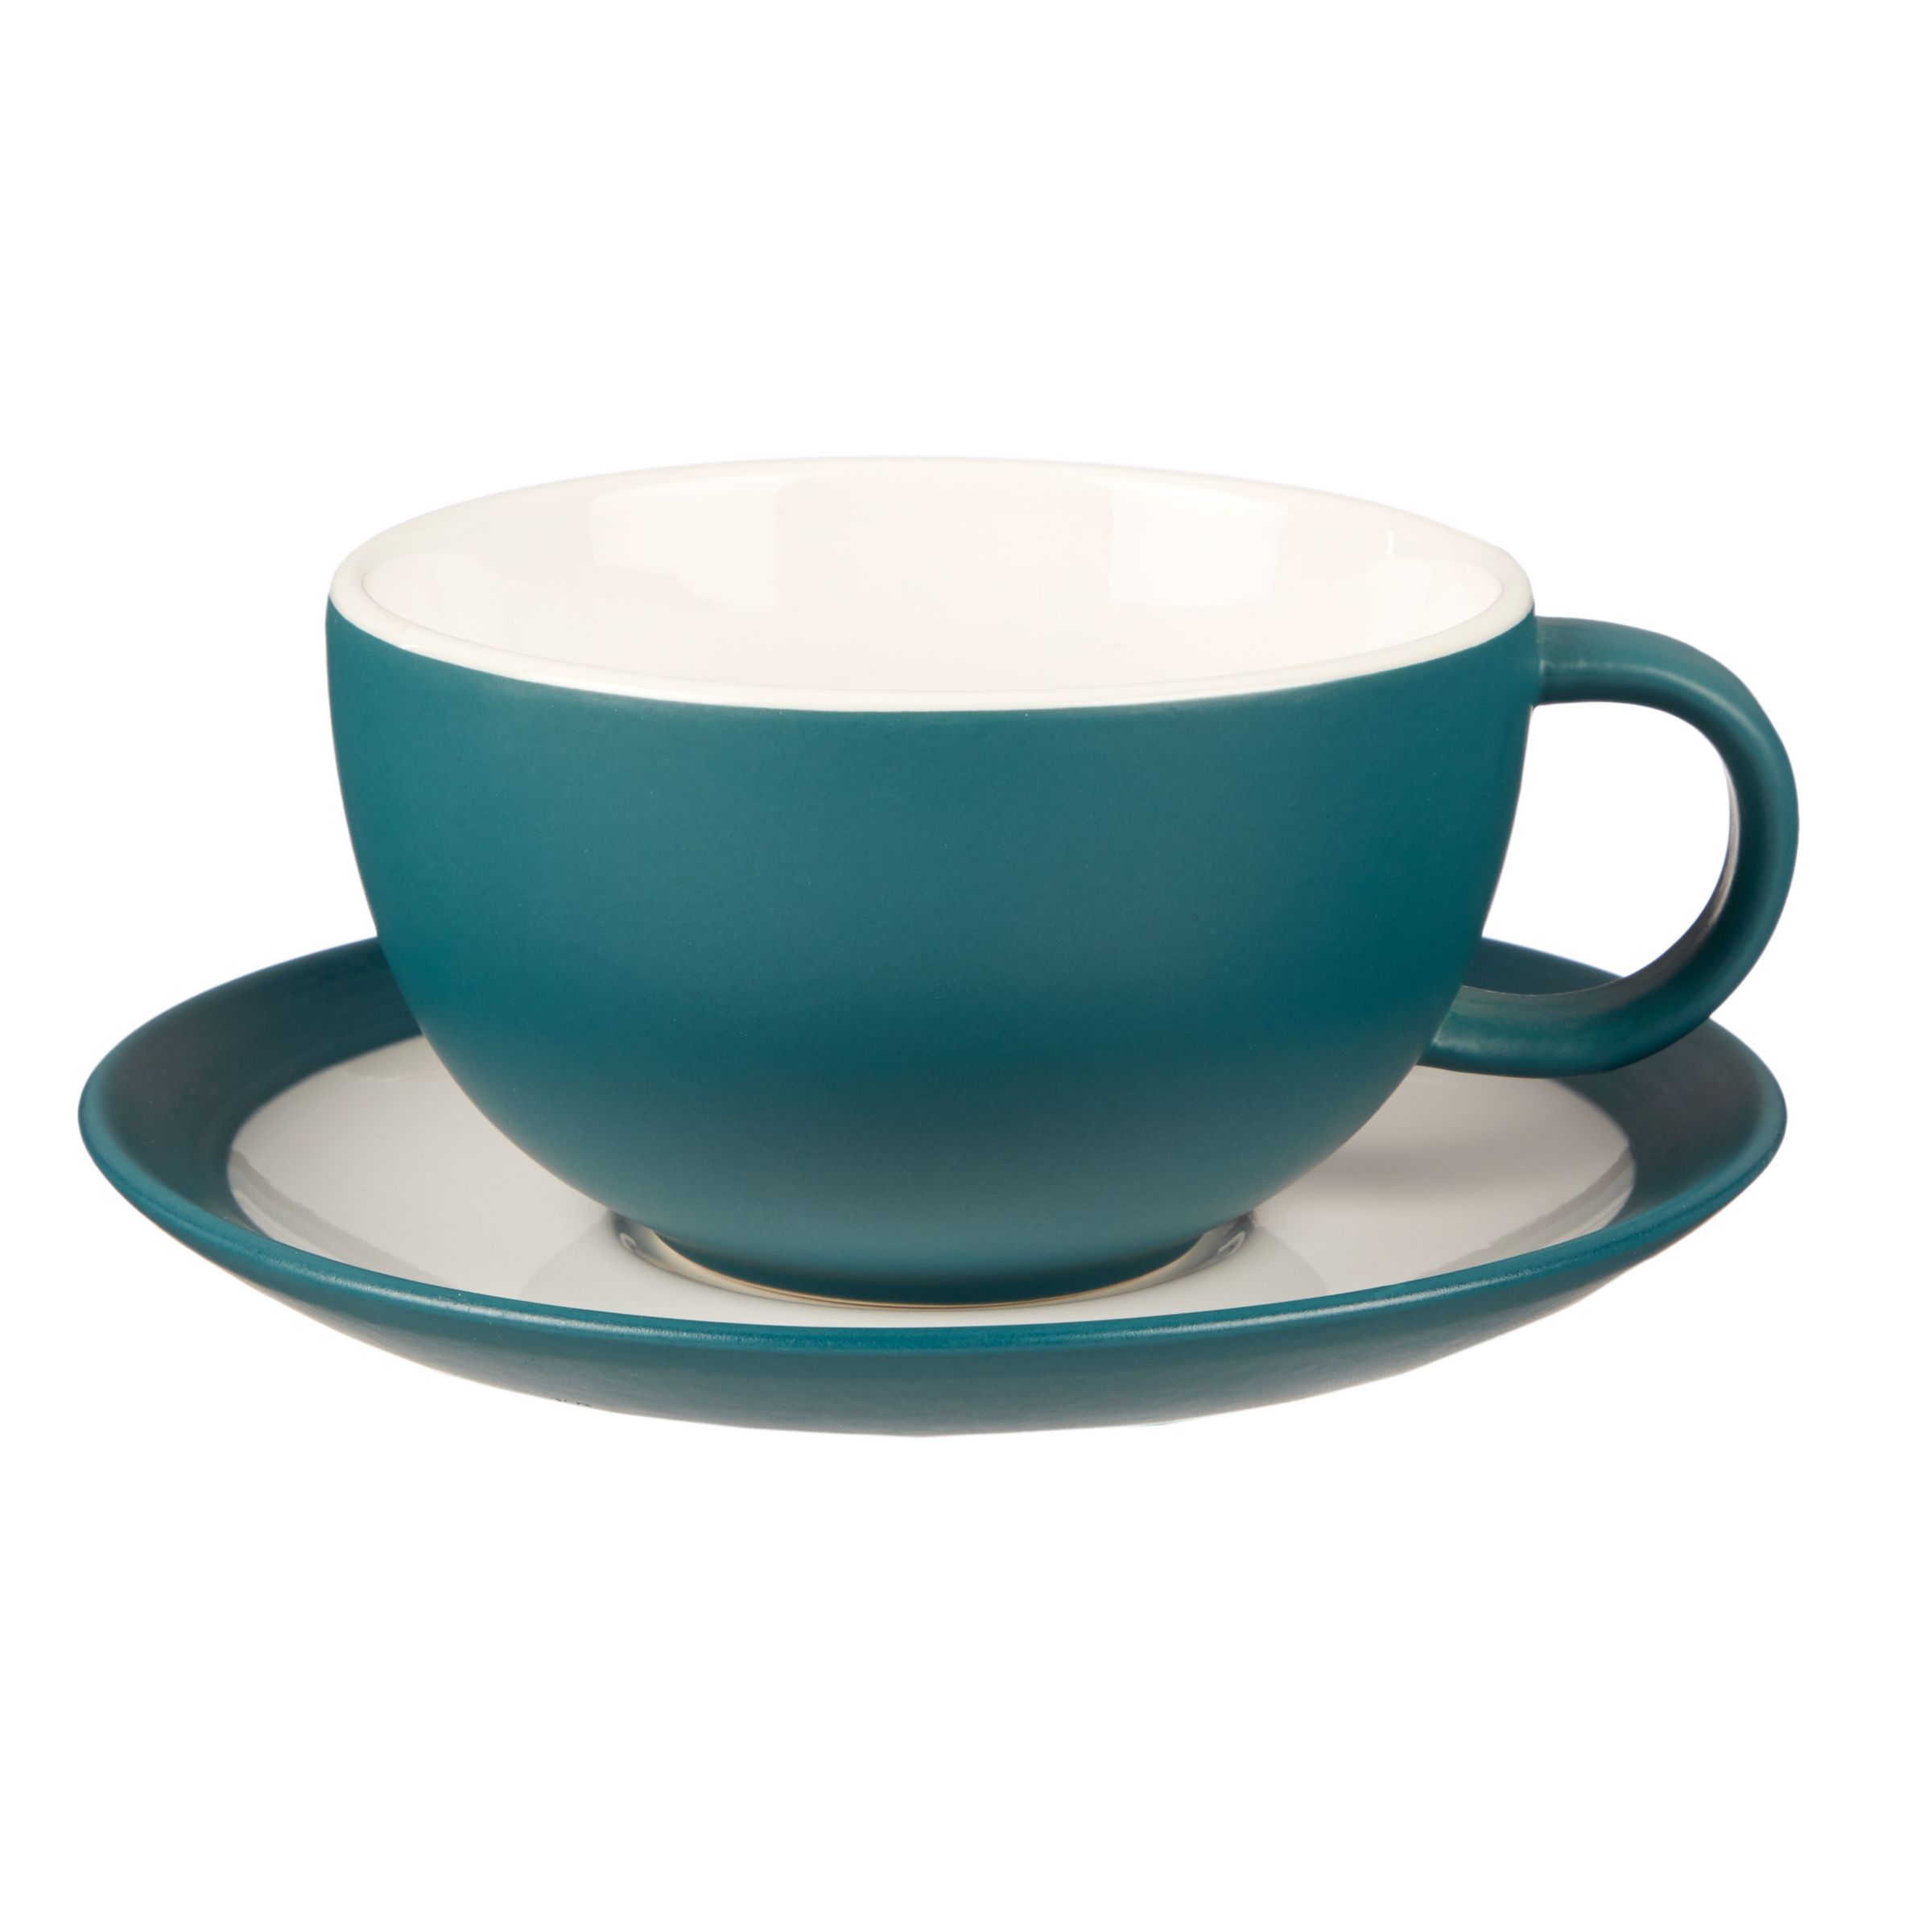 Cups & Saucers | Drinkware | Home & Garden | John Lewis